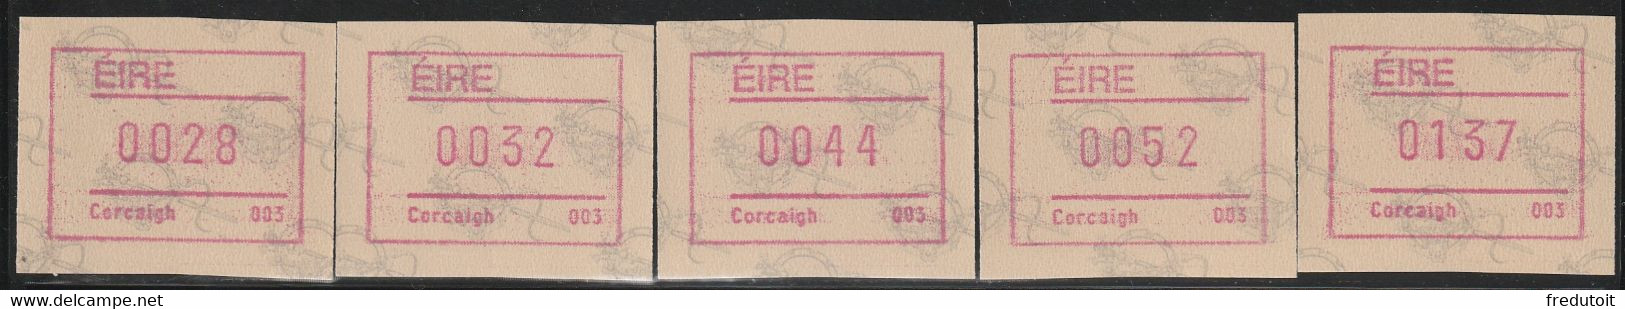 IRLANDE - Timbres Distributeurs / FRAMA  ATM - N°4** (1992) Corcaigh 003 - Viñetas De Franqueo (Frama)